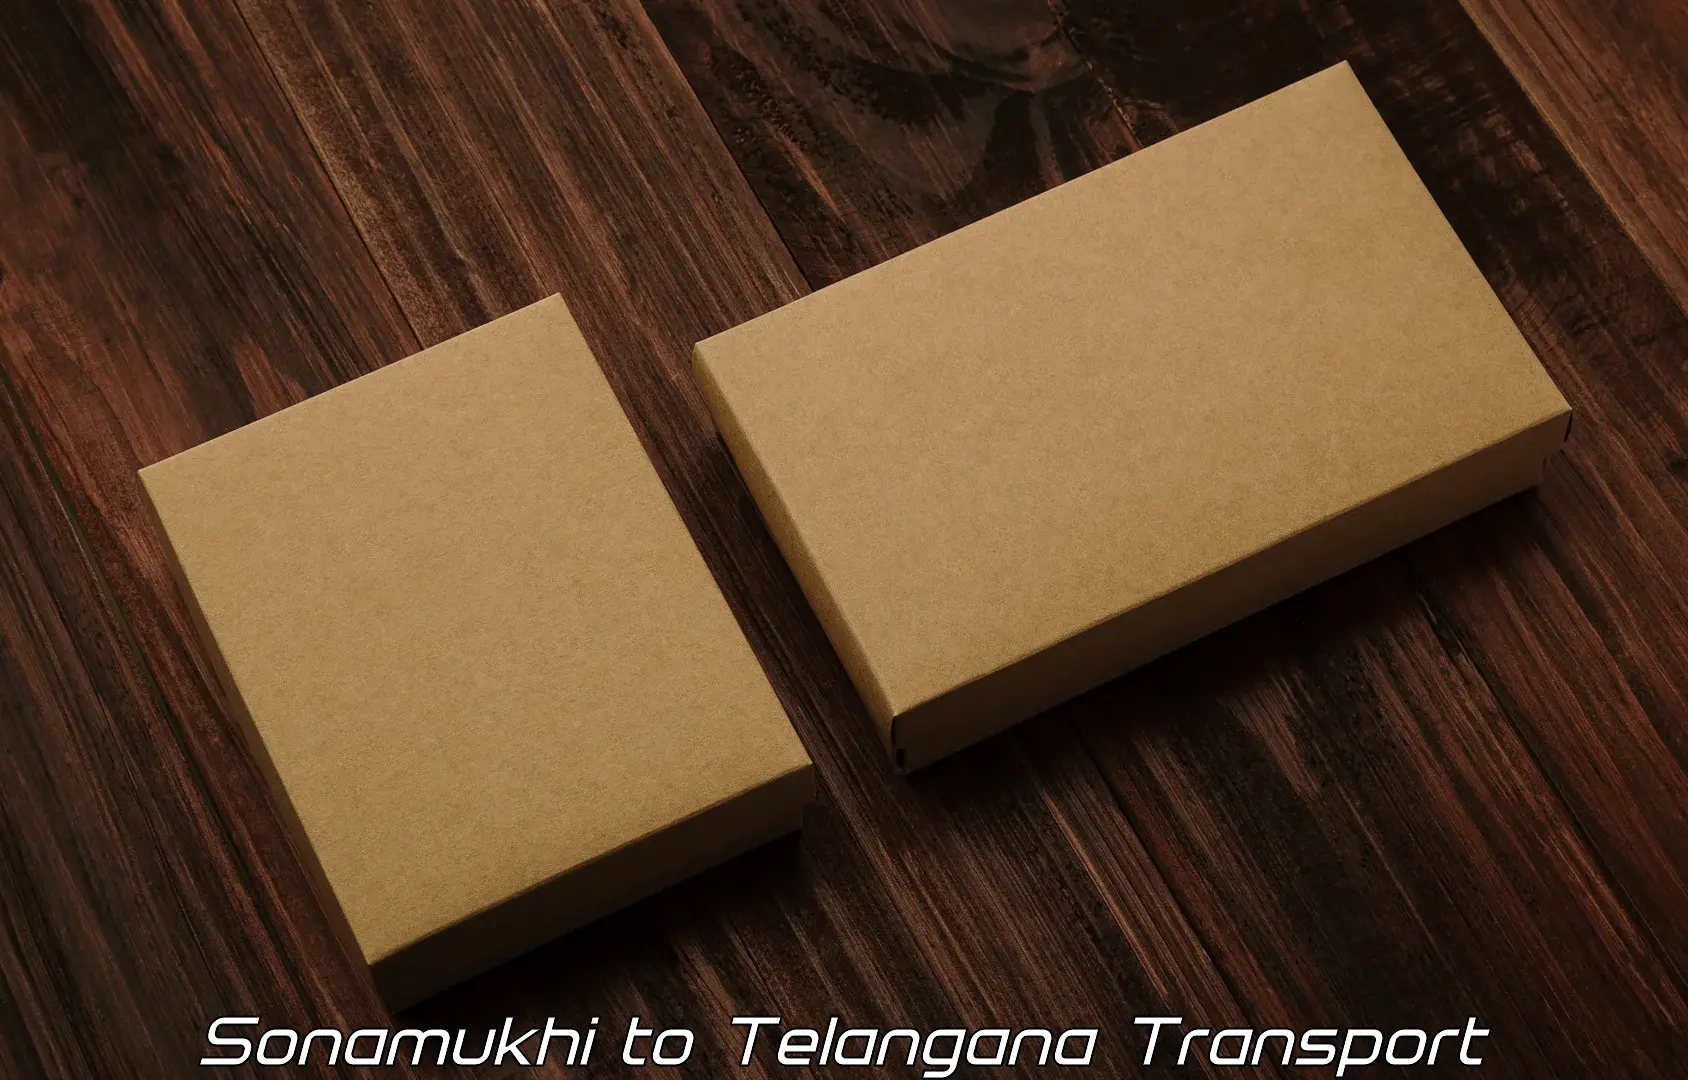 Two wheeler parcel service Sonamukhi to Yerrupalem